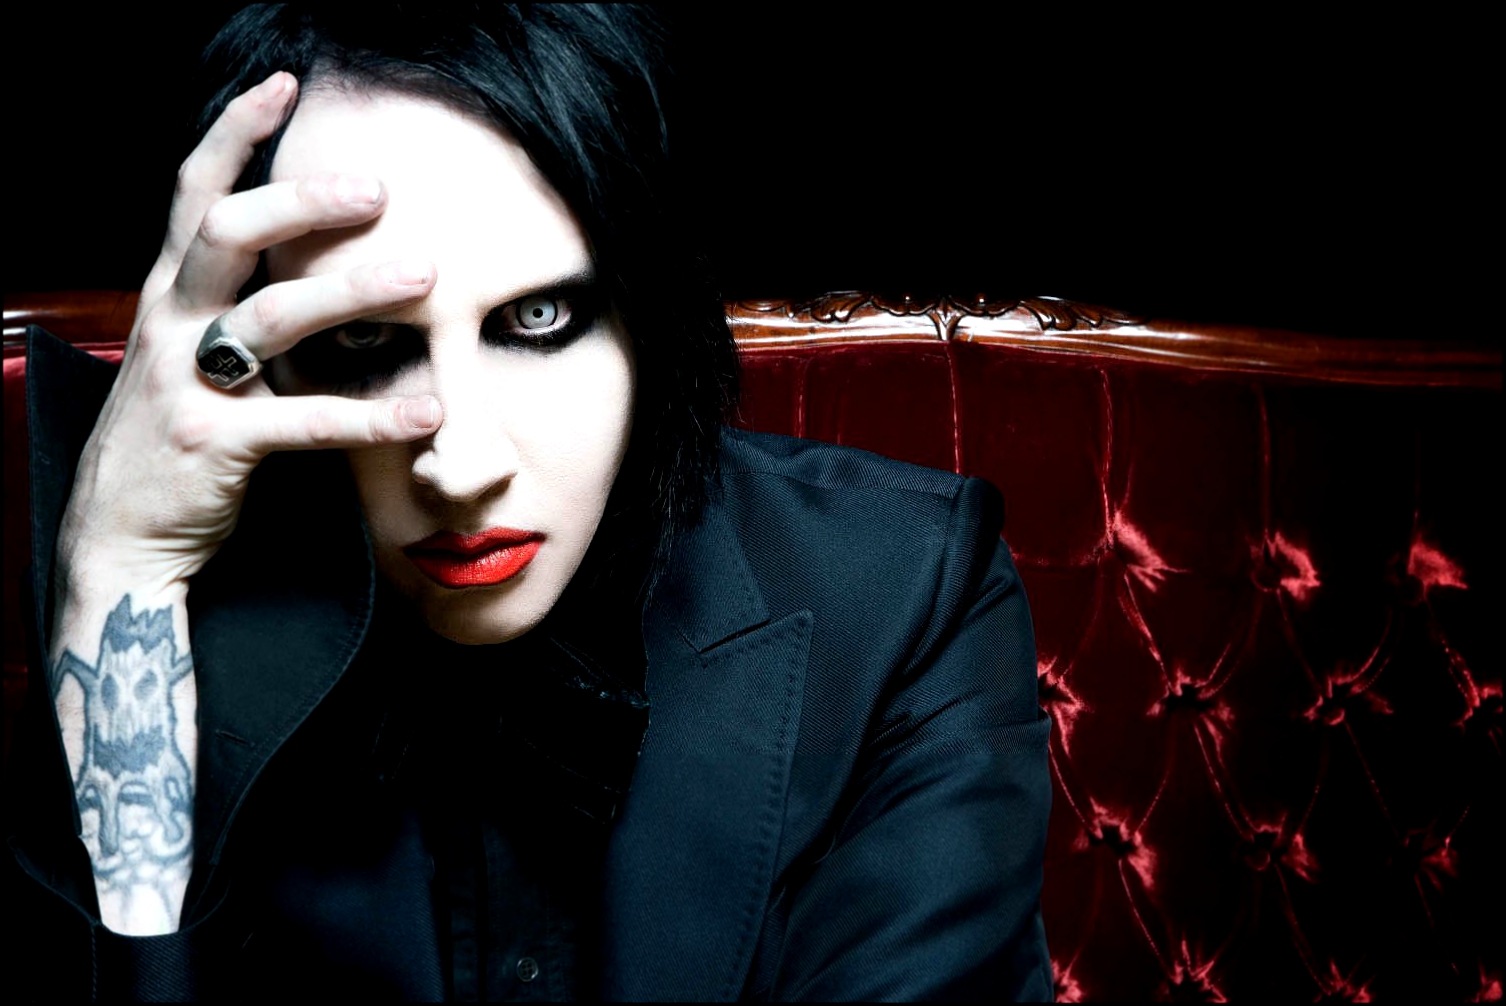 Marilyn Manson — американская индастриал-рок-группа, которая была образована в городе Форт-Лодердейл, штат Флорида в 1989 году изначально под названием Marilyn Manson & the Spooky Kids. Группа известна прежде всего своим эпатажным вызывающим видом, коим не раз шокировали общественность, за что известны как «хулители морали США» наравне с такими группами, как Korn и Slayer.